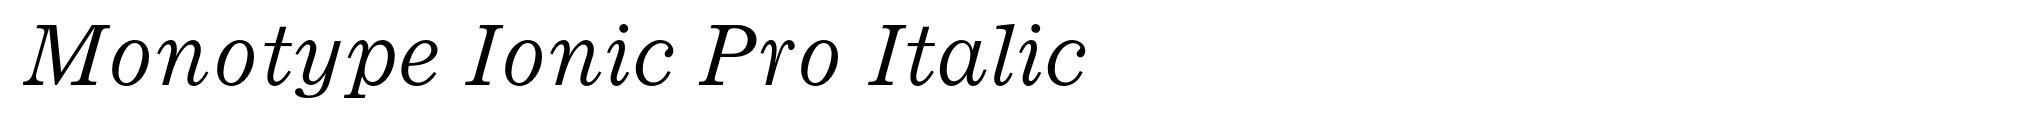 Monotype Ionic Pro Italic image